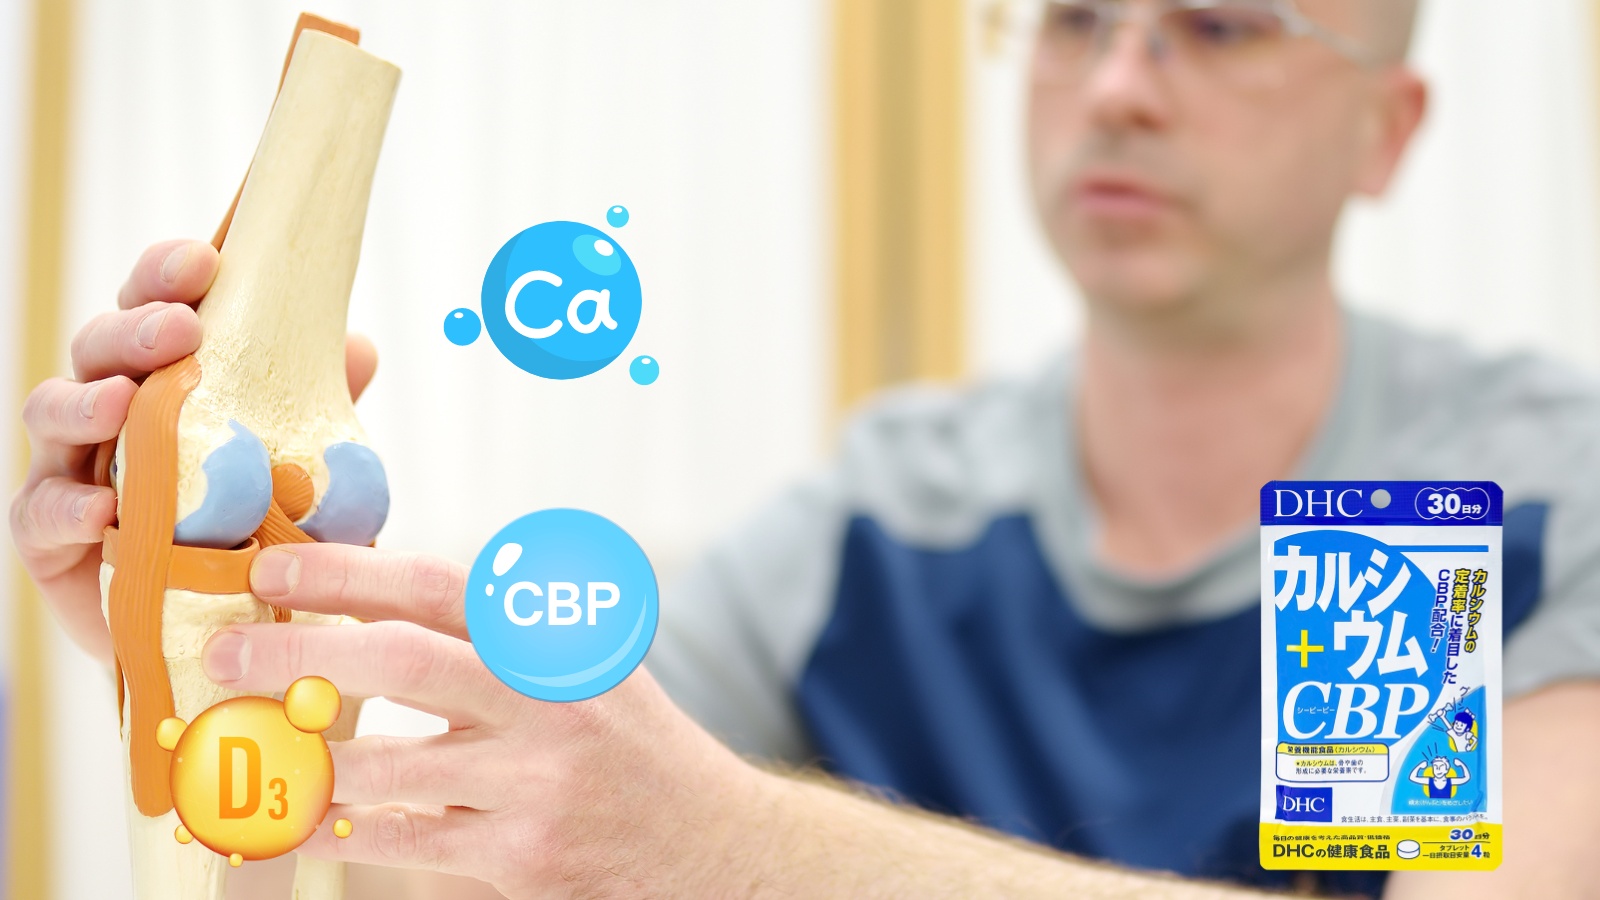  DHC Calcium + CBP kết hợp các thành phần giúp tăng cường sức khỏe xương khớp